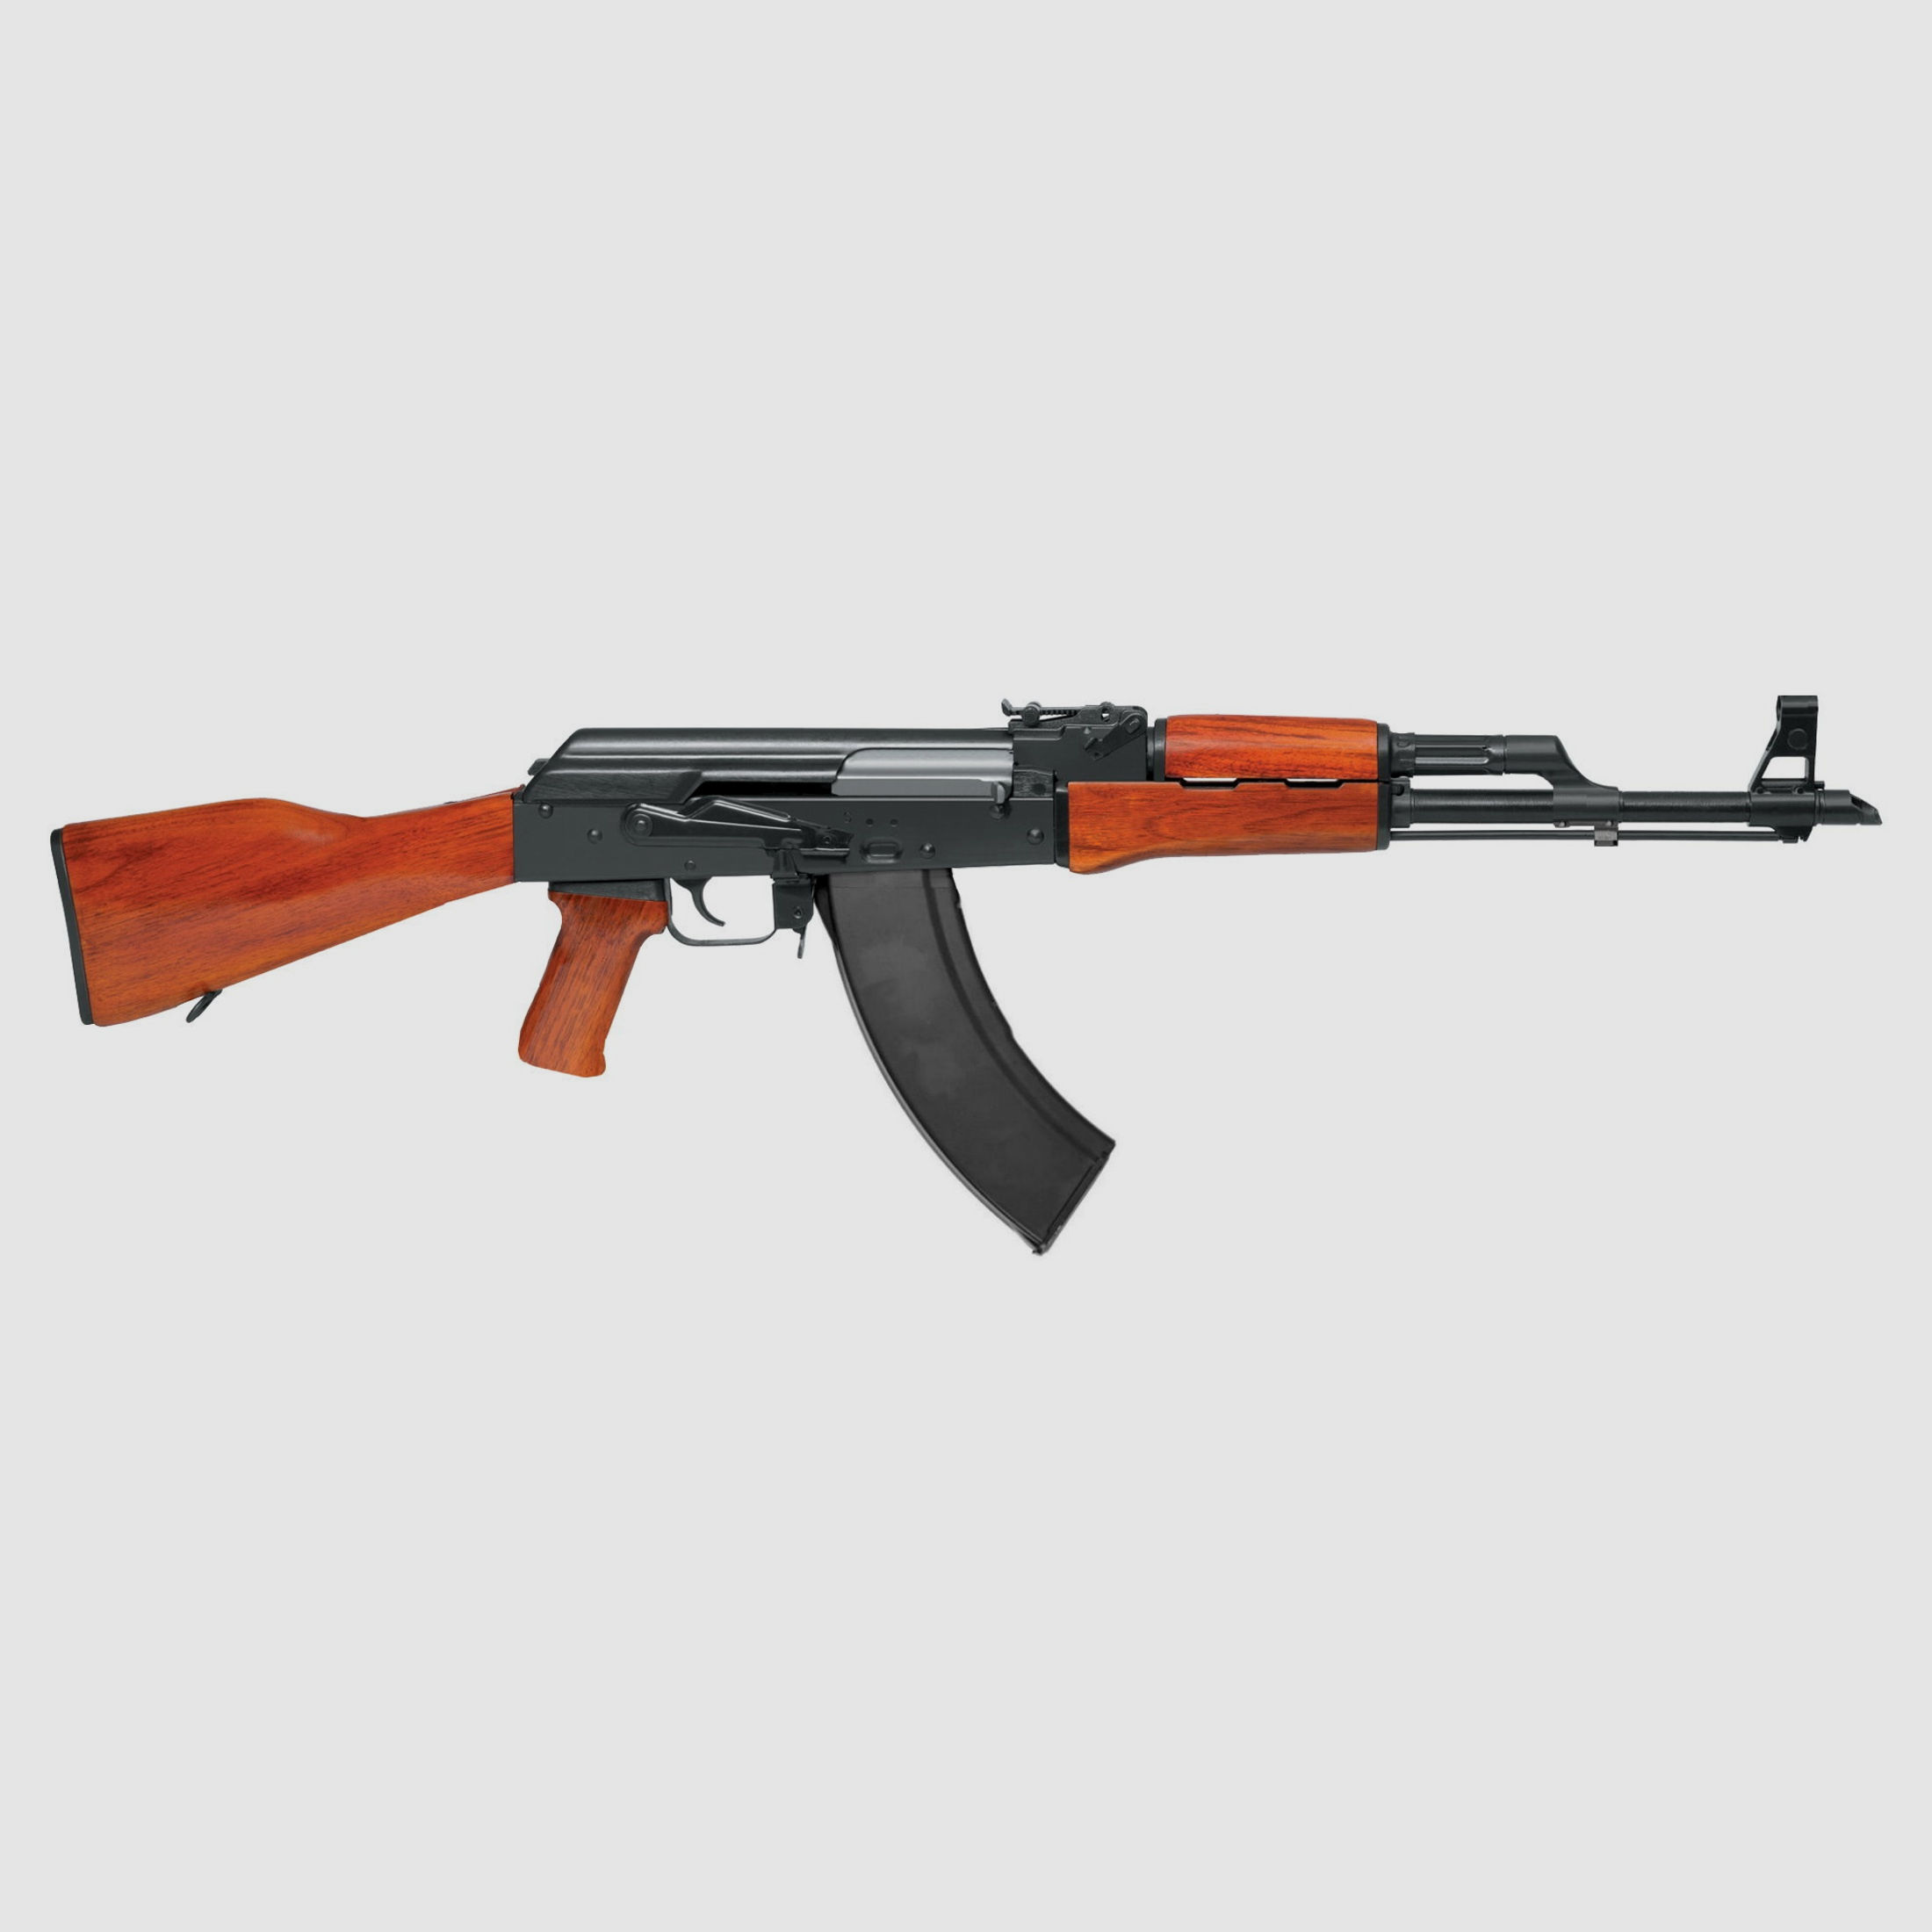 AK47 56-2 CO2 YUNKER 4,5mm Vers.3 AKM AK-47 Luftgewehr NORINCO